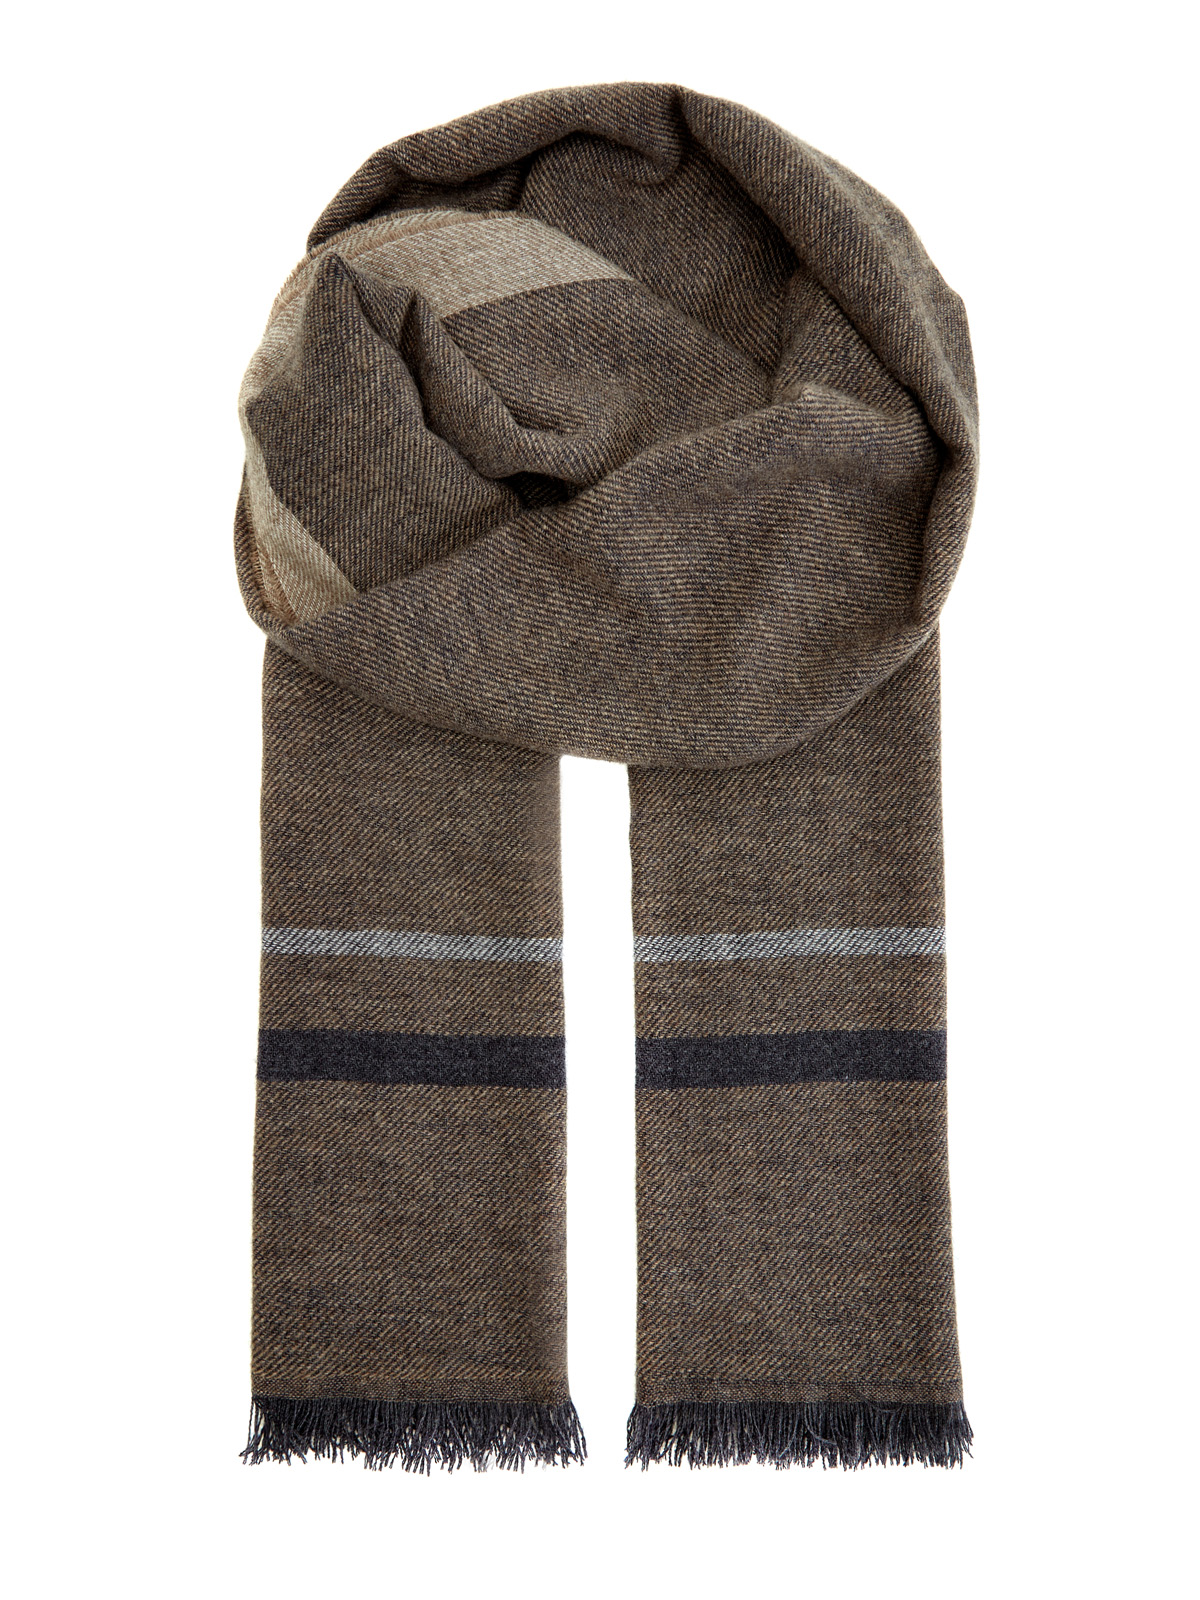 Теплый шерстяной шарф с волокнами шелка и кашемира BERTOLO CASHMERE. Цвет: коричневый